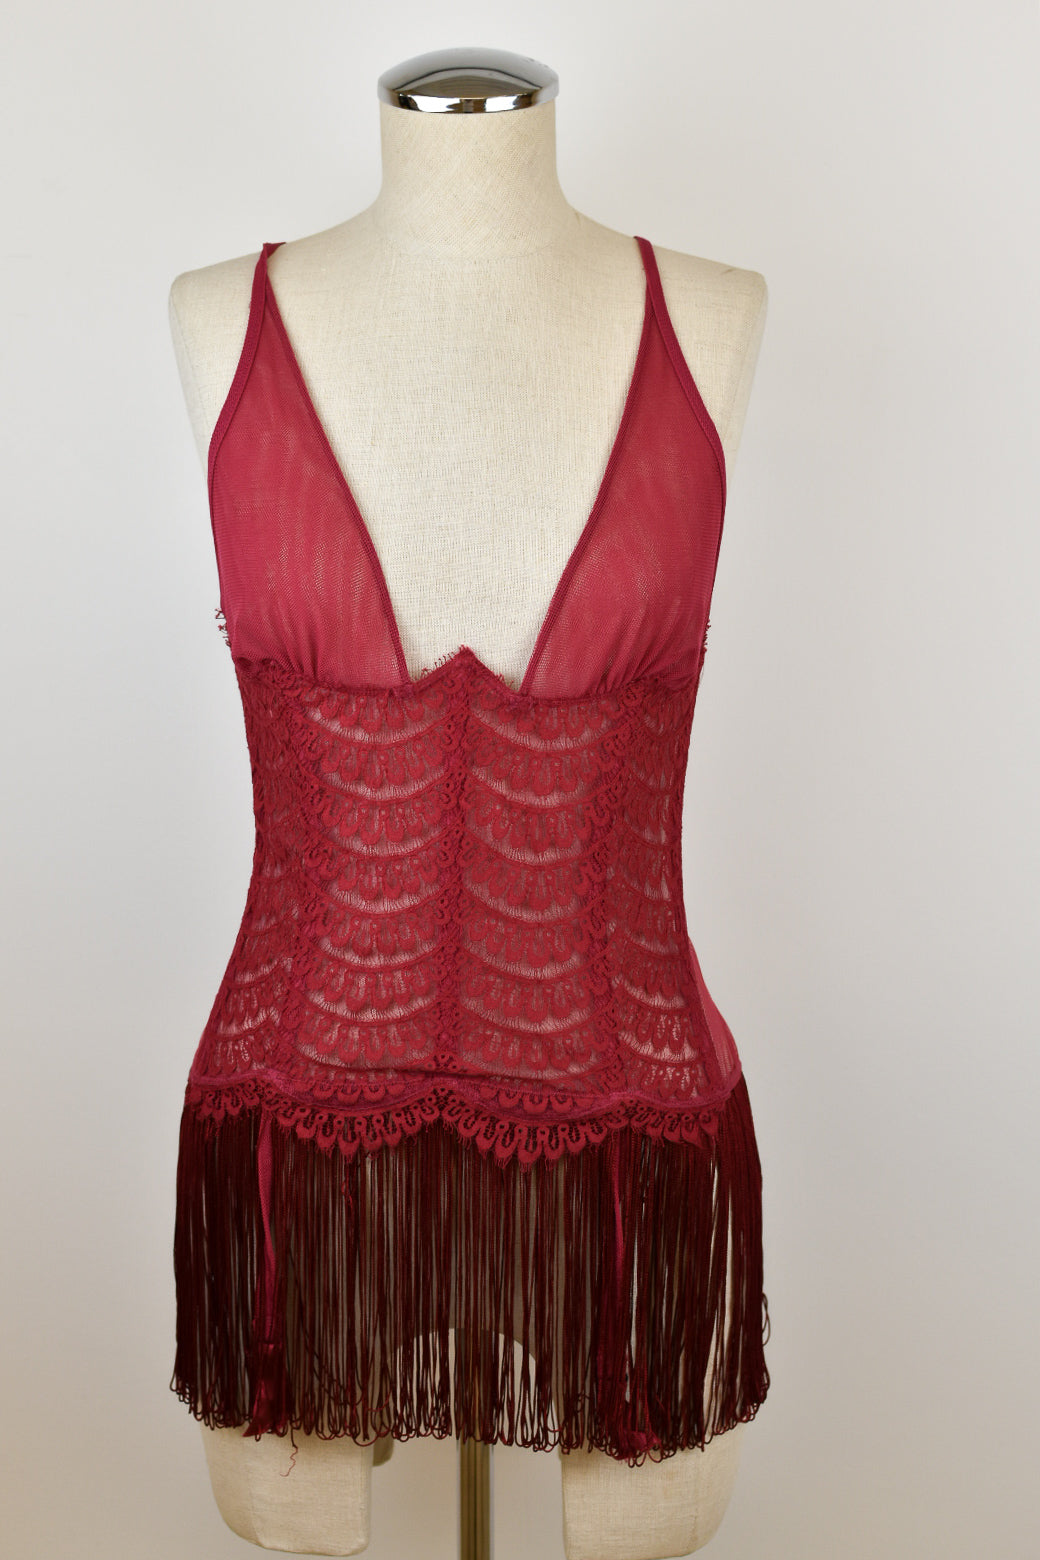 LA PERLA, Red Women's Bustiers, Corsets & Suspenders